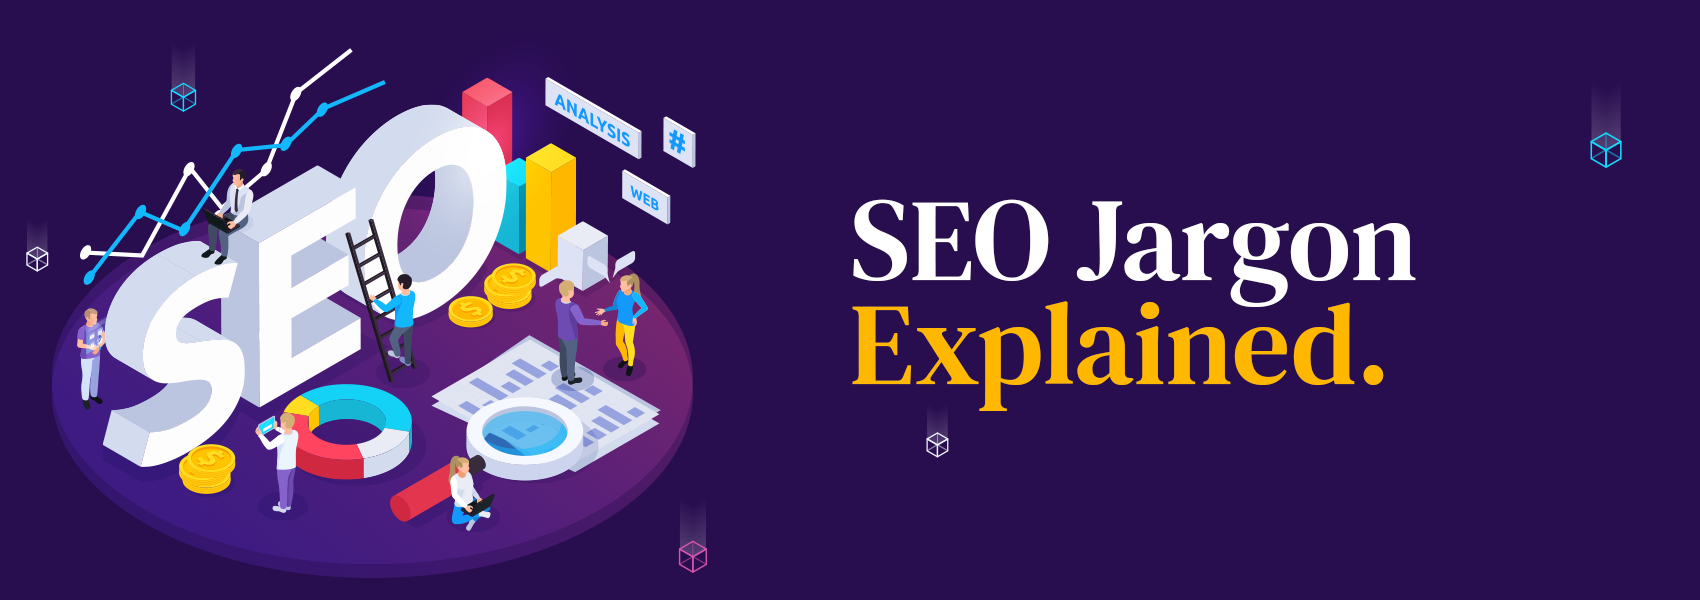 SEO Jargon Explained blog banner